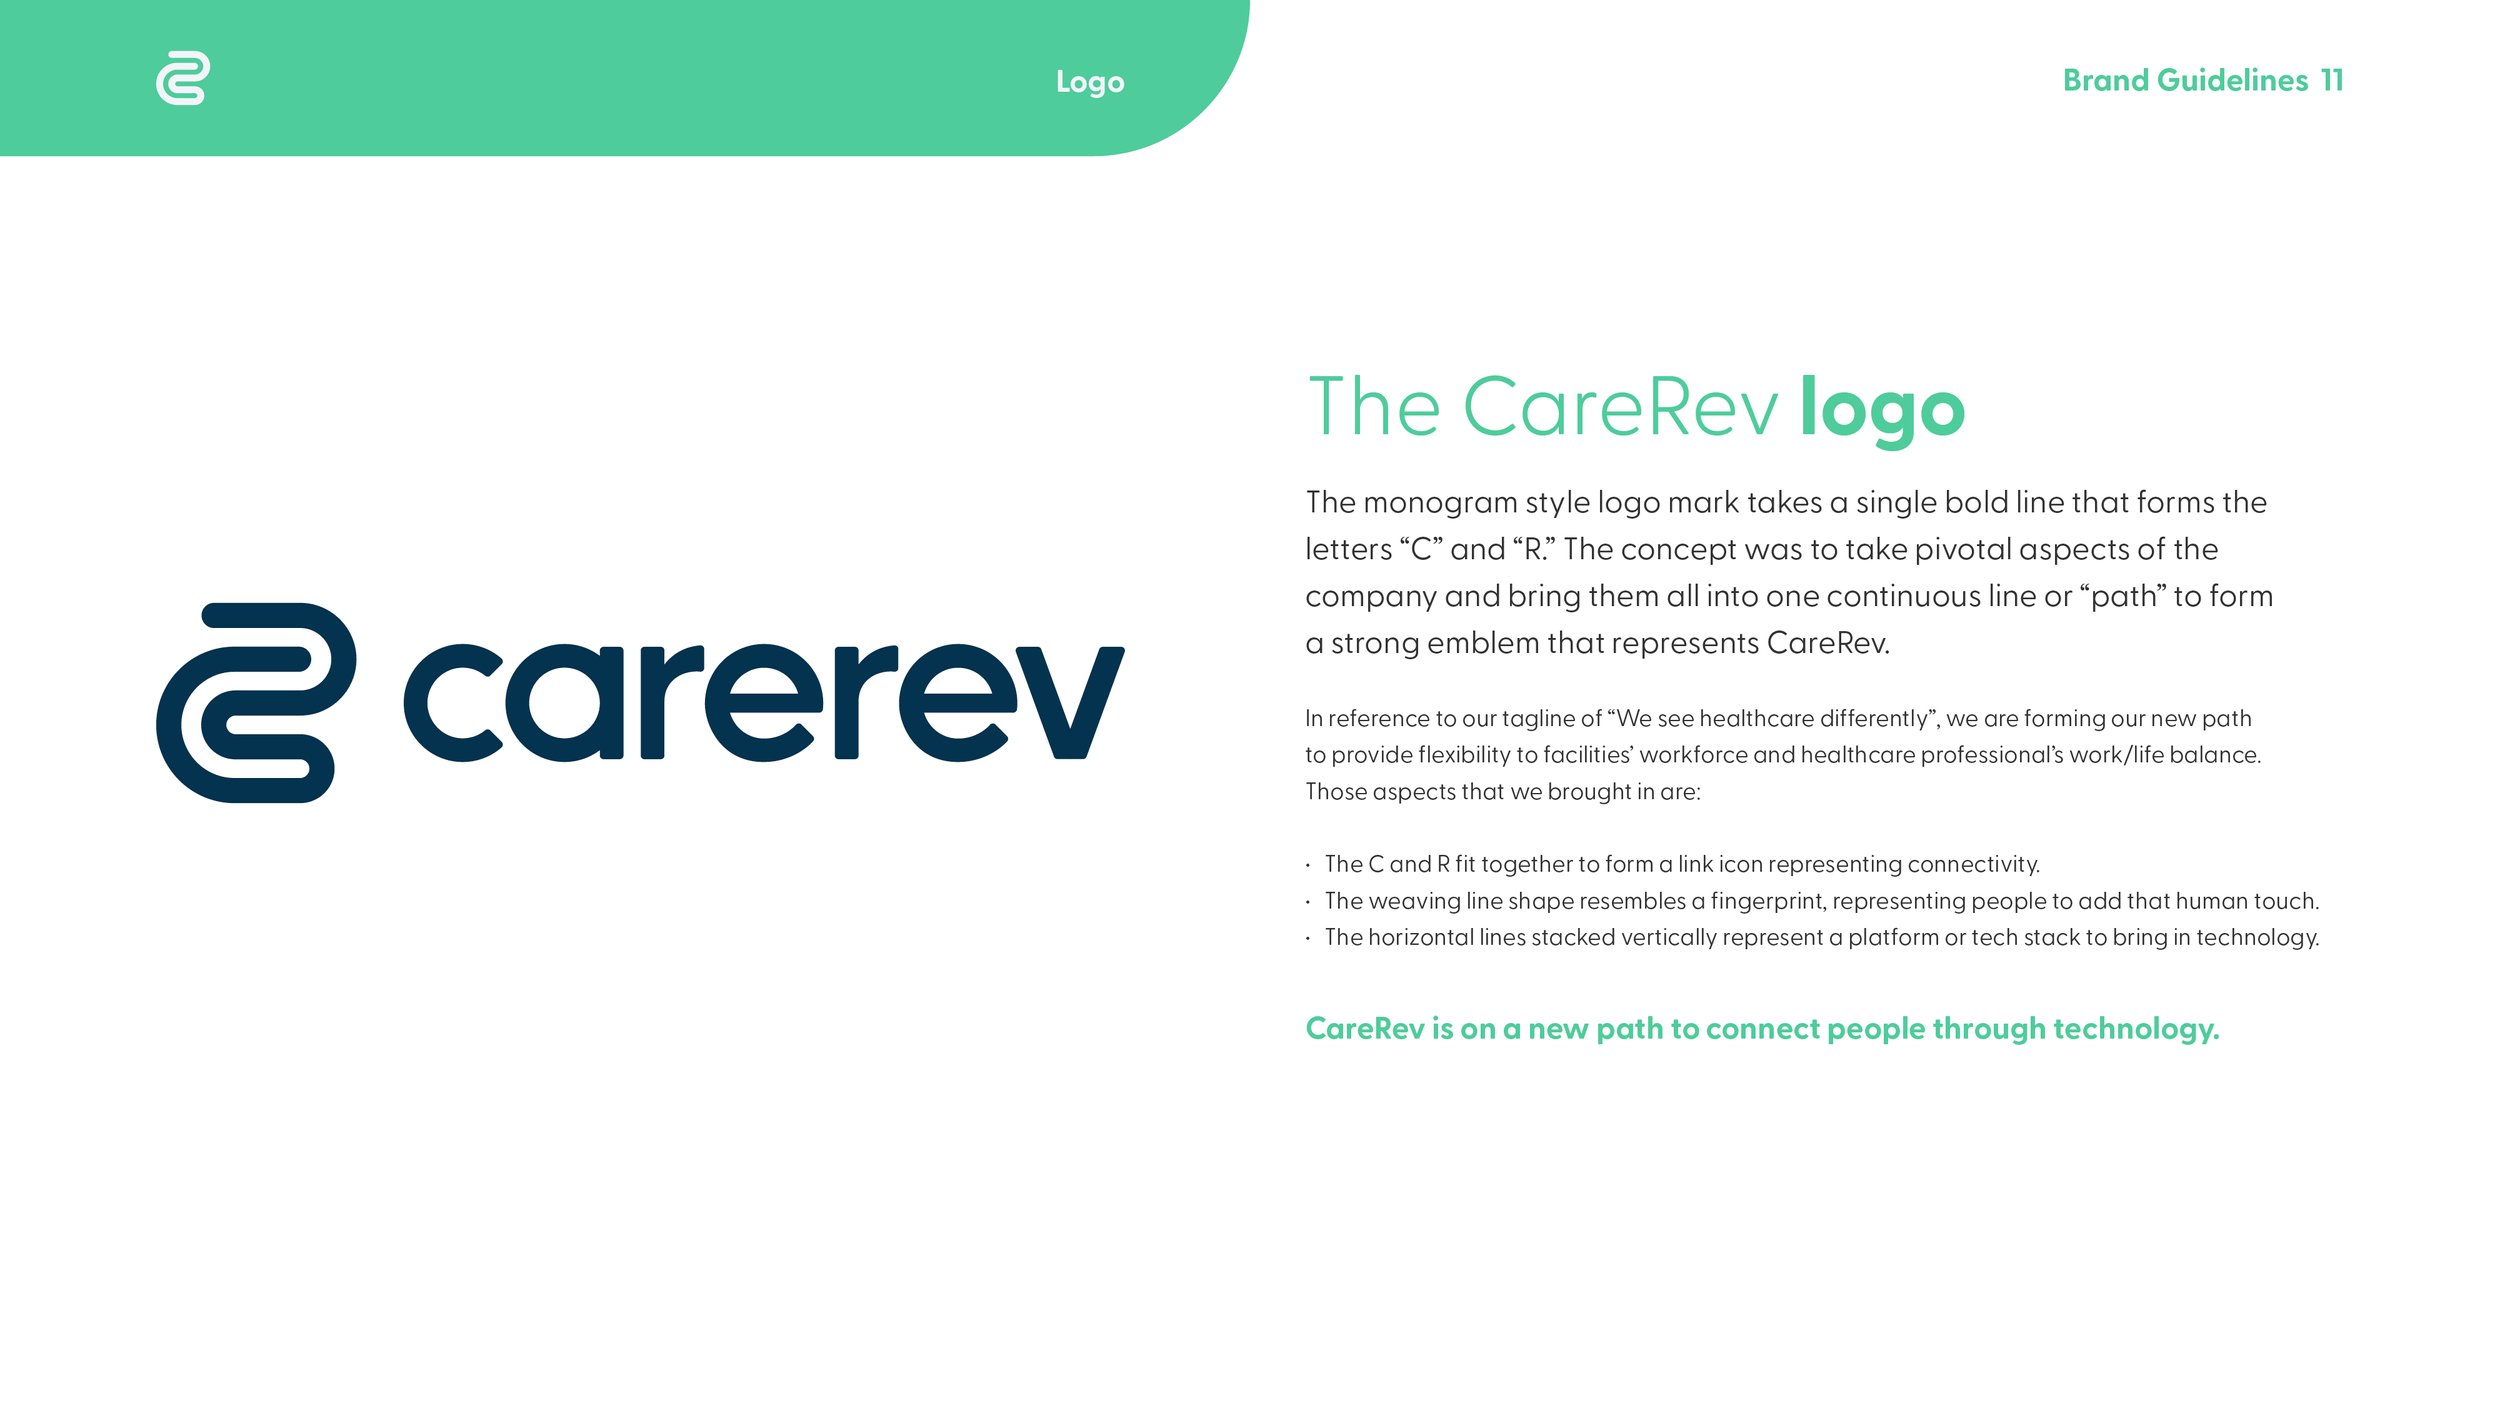 CareRev-Brand-Guidelines_q411.jpg